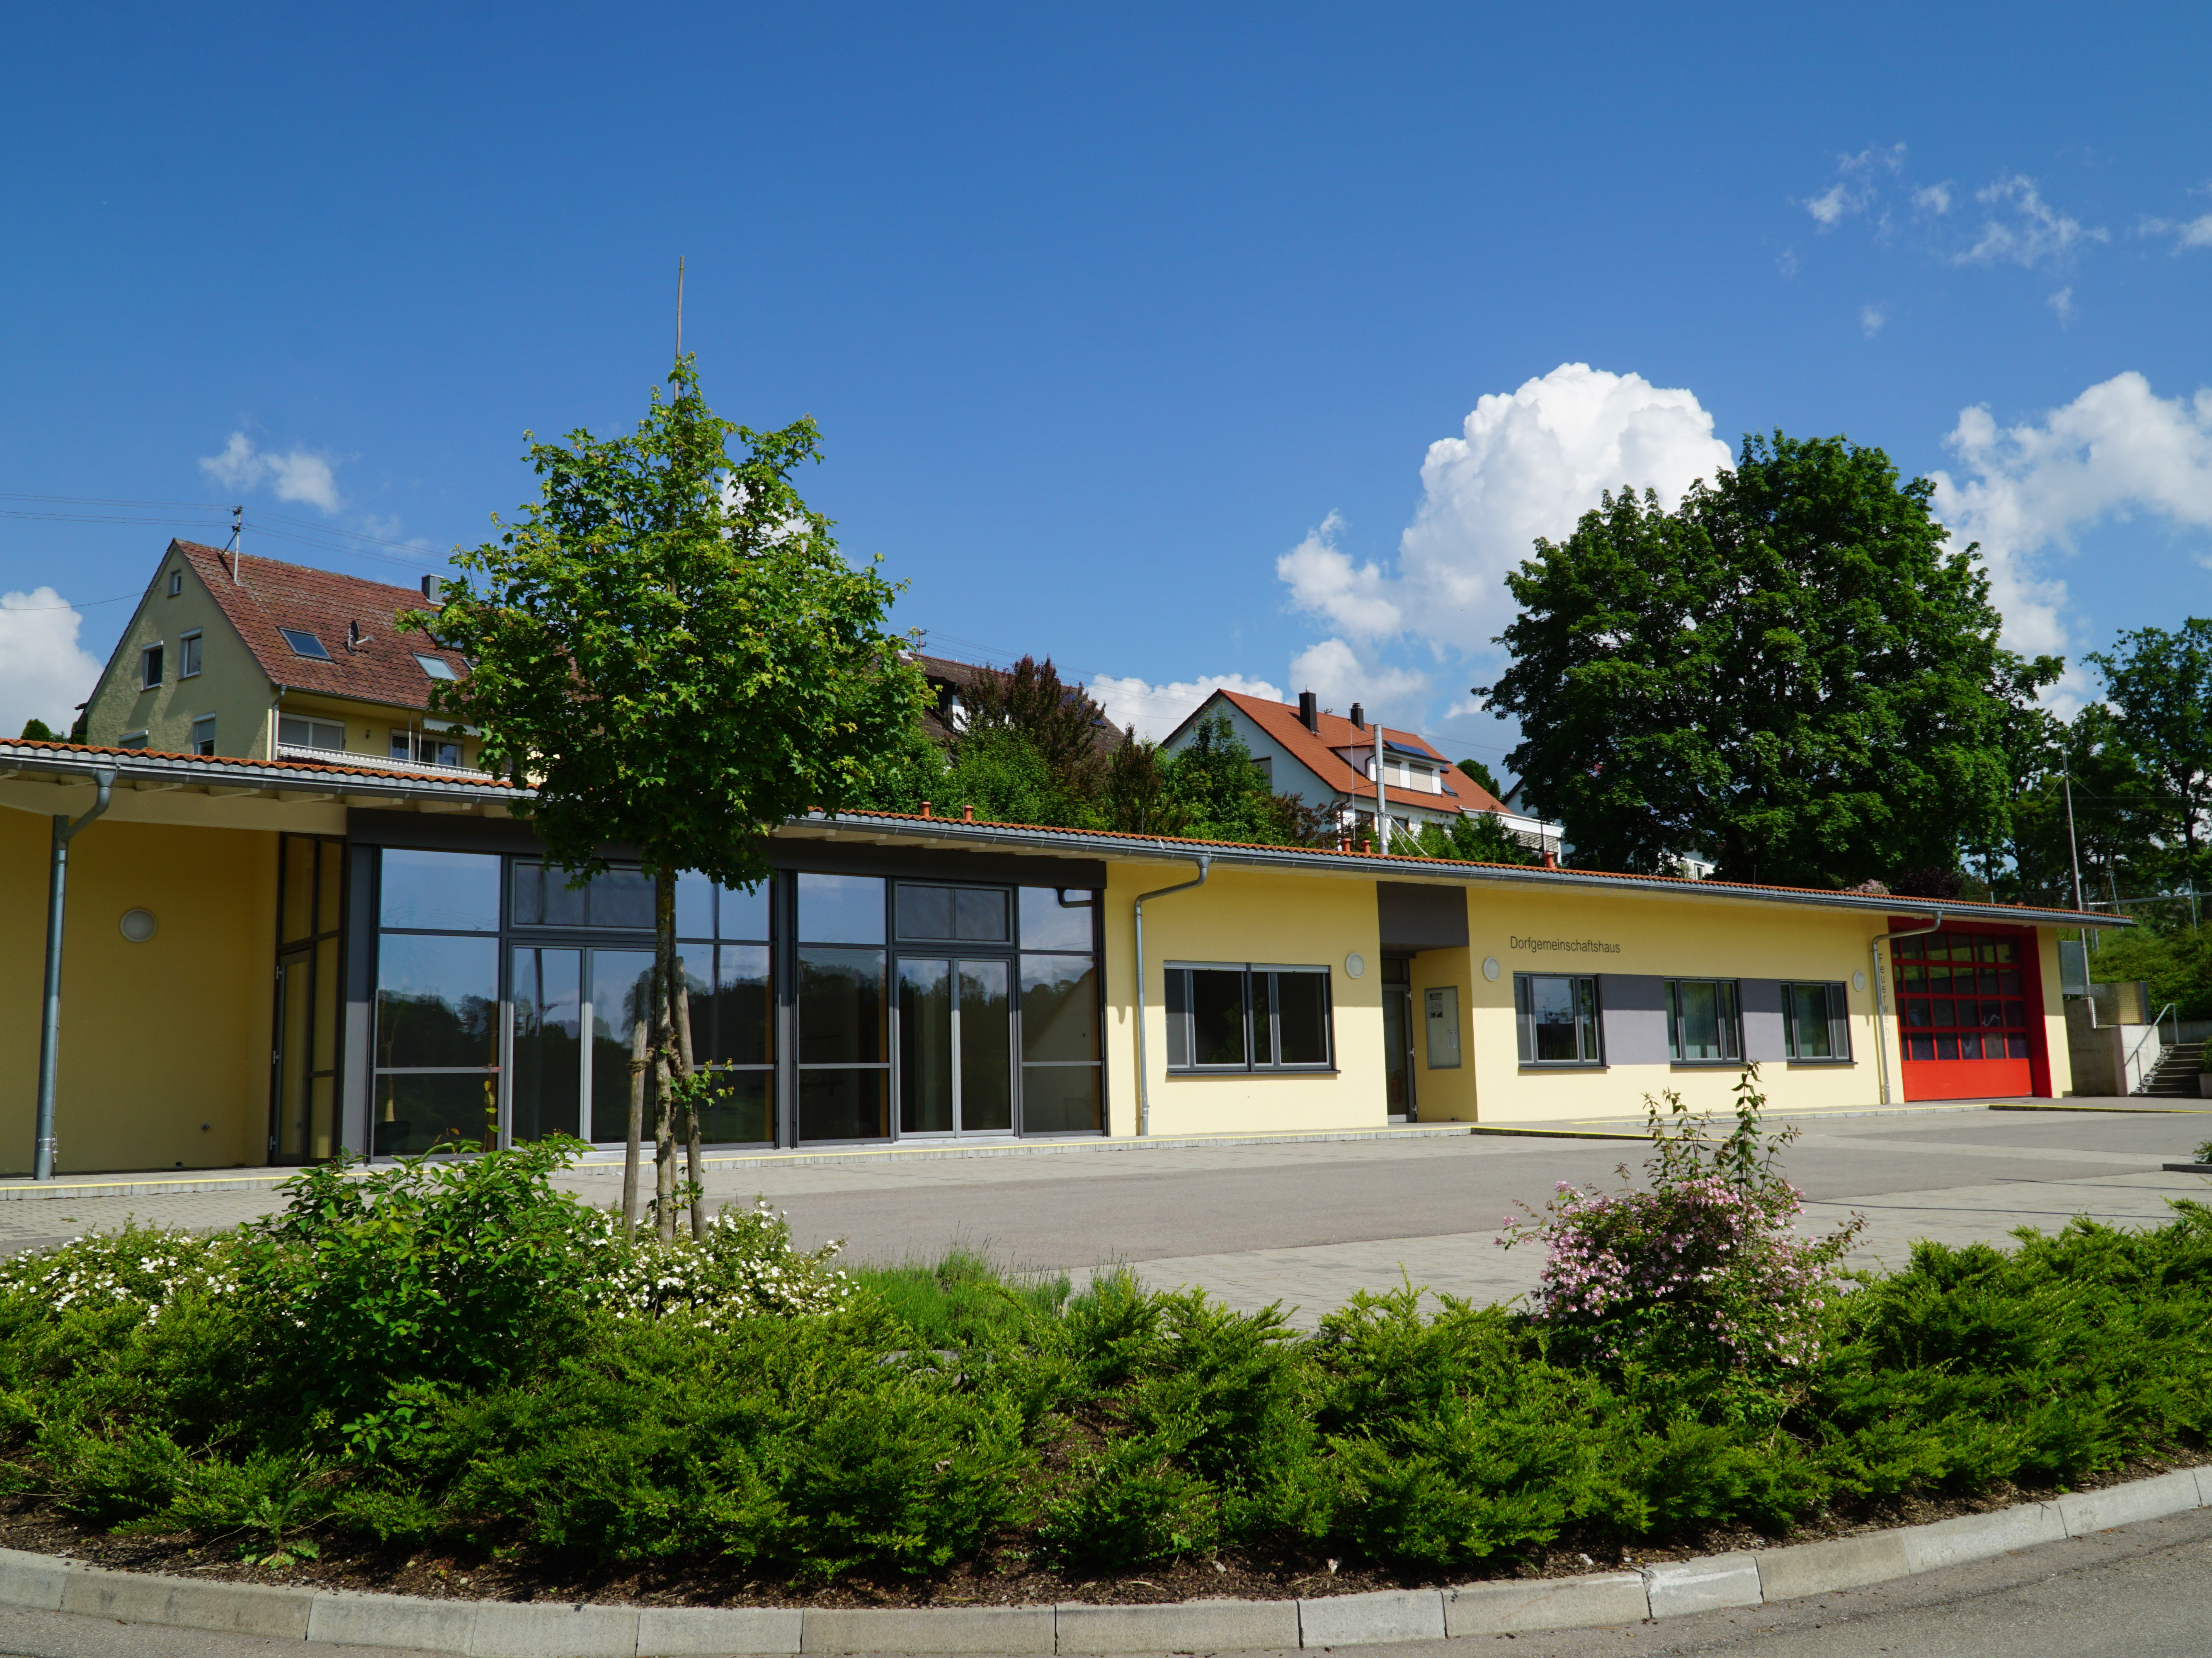  Dorfgemeinschaftshaus Göffingen 